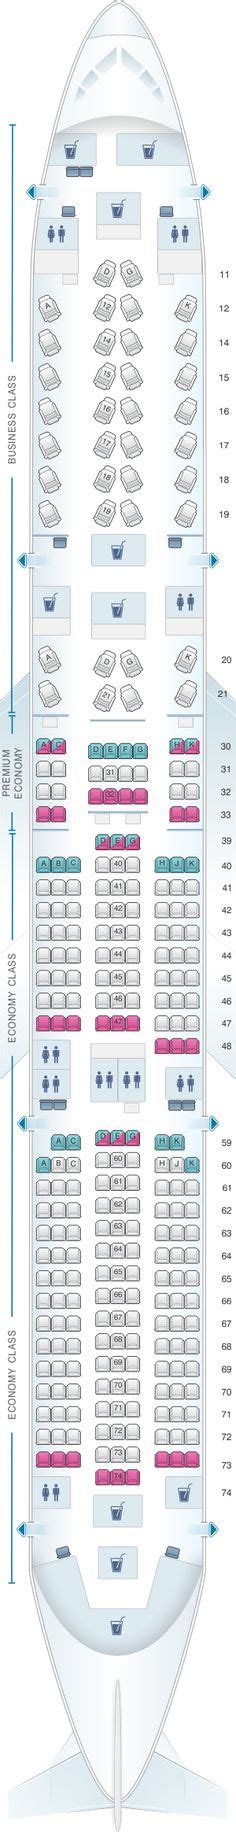 Latam Brasil Airbus A350 900 359 Seat Map Seating Seating Charts